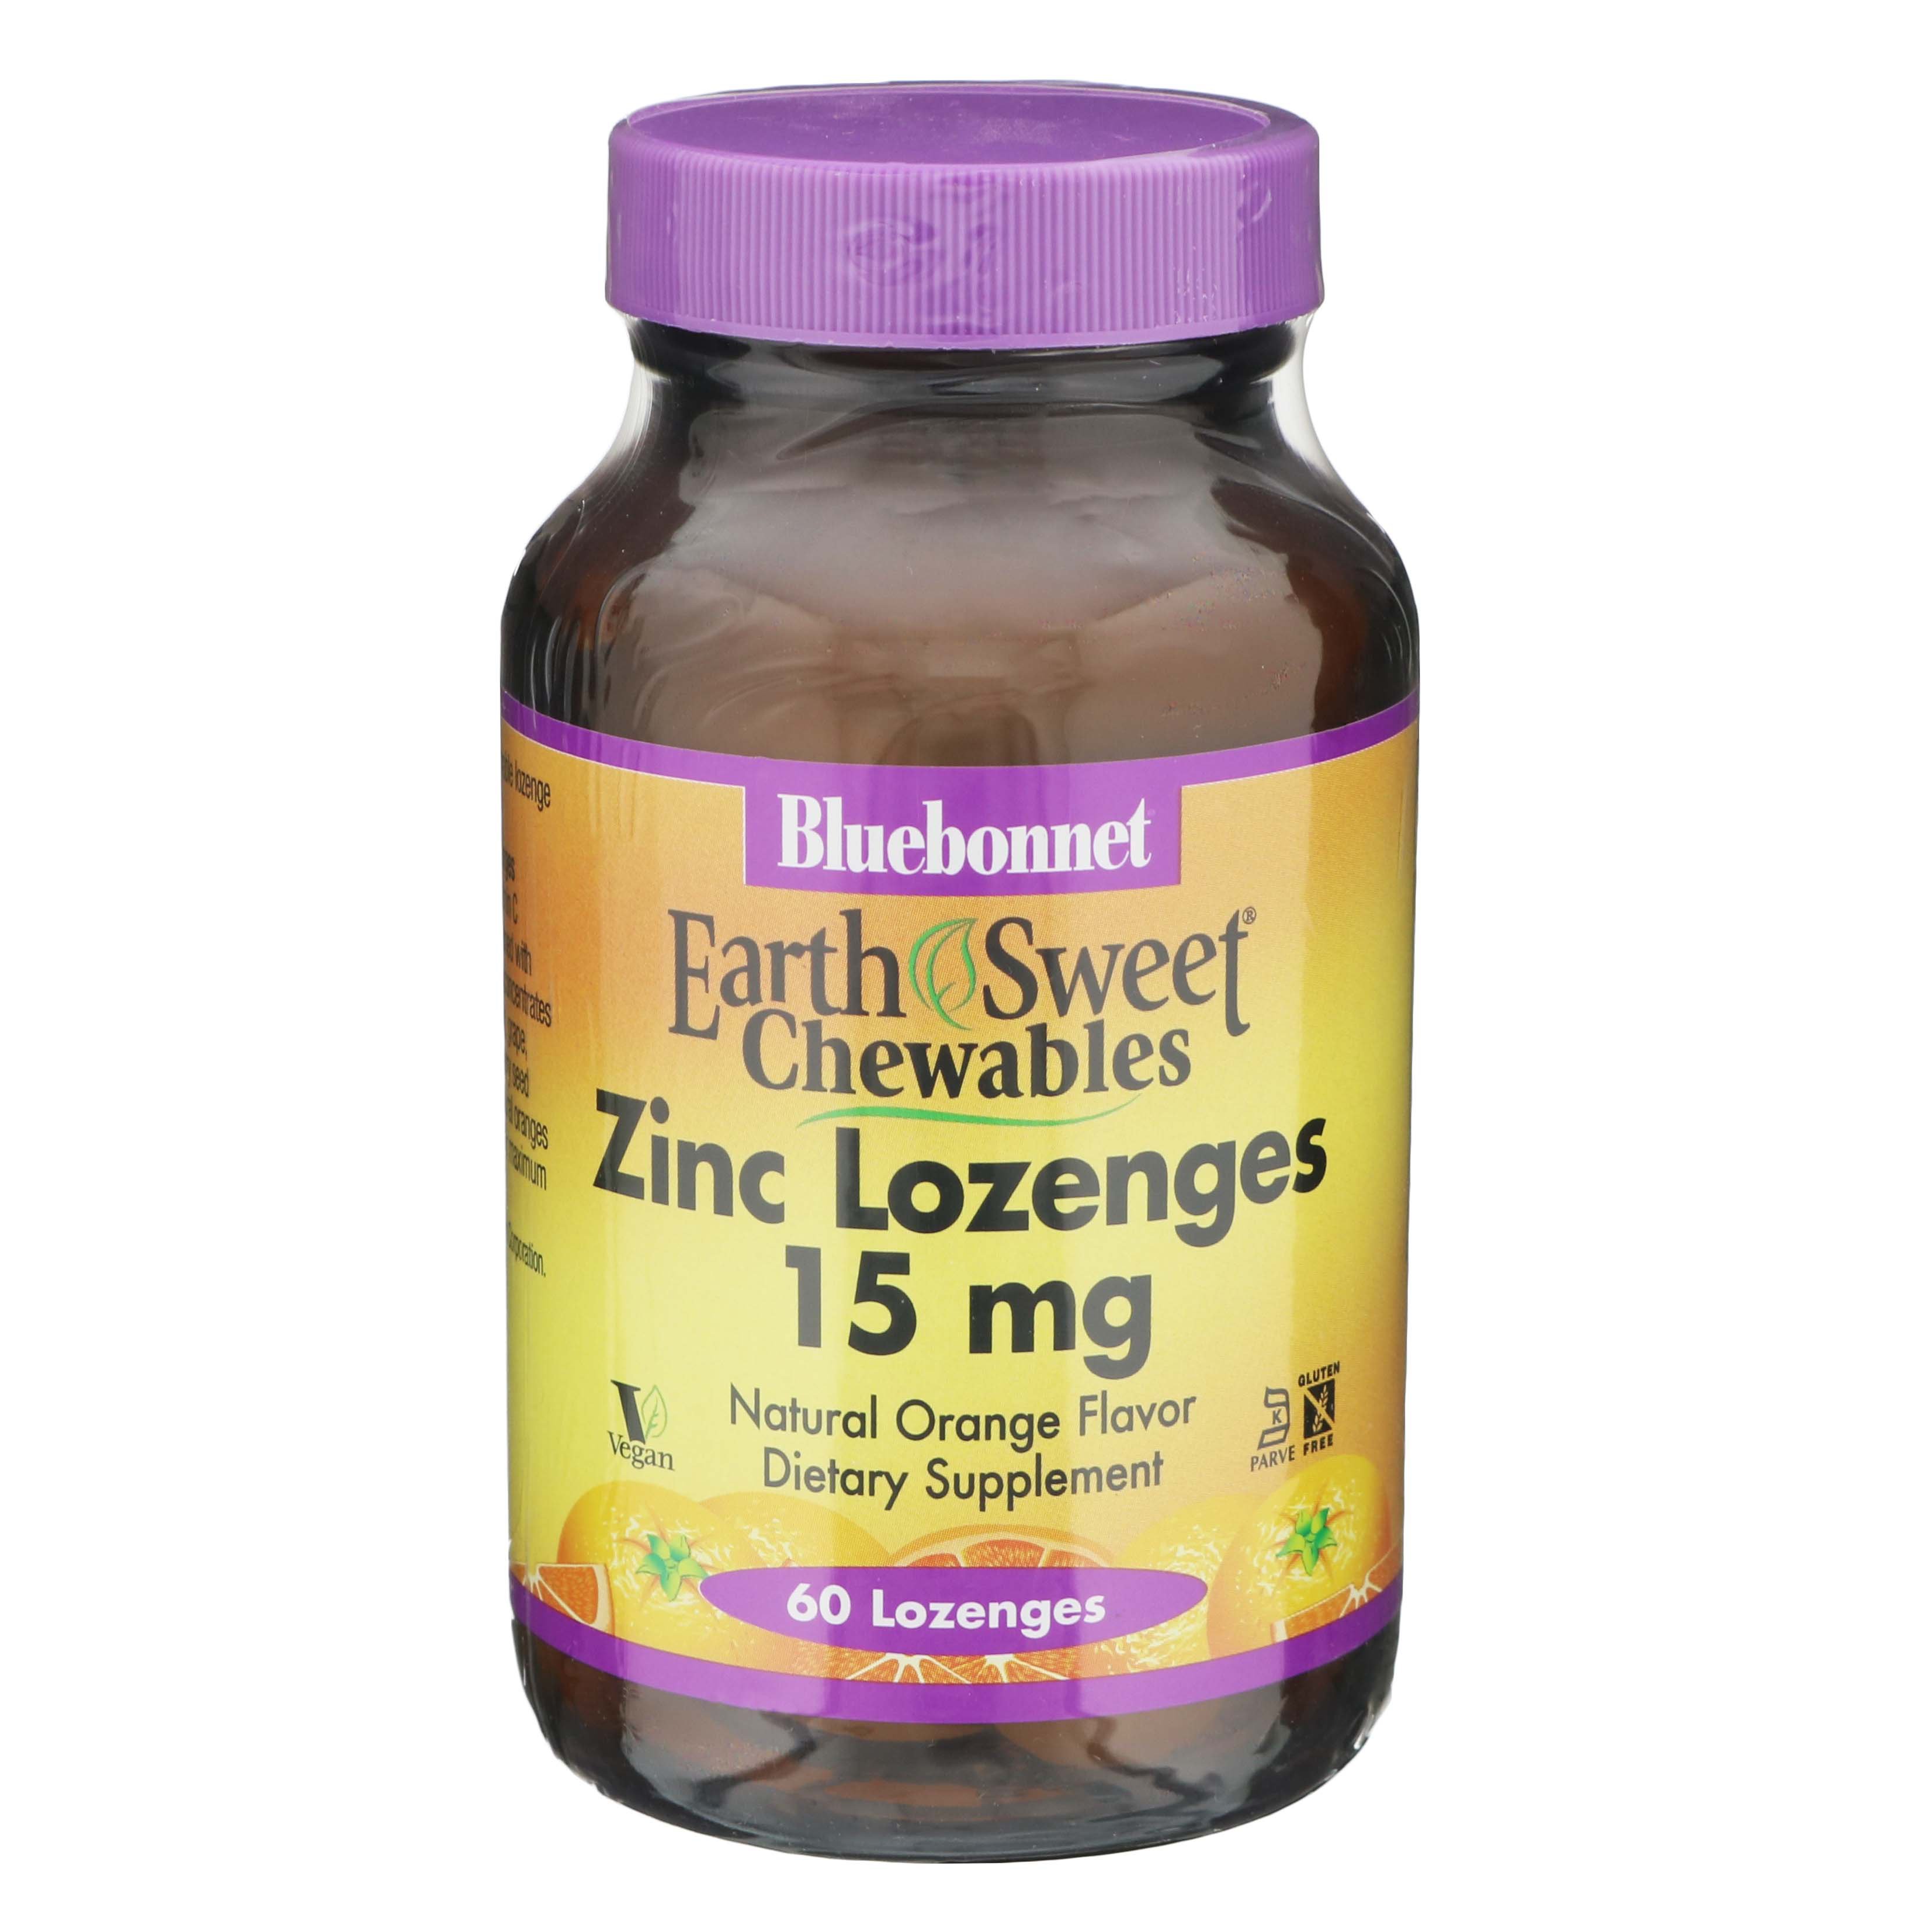 Bluebonnet EarthSweet Chewable Zinc Lozenges - 15 mg - Shop Minerals at ...